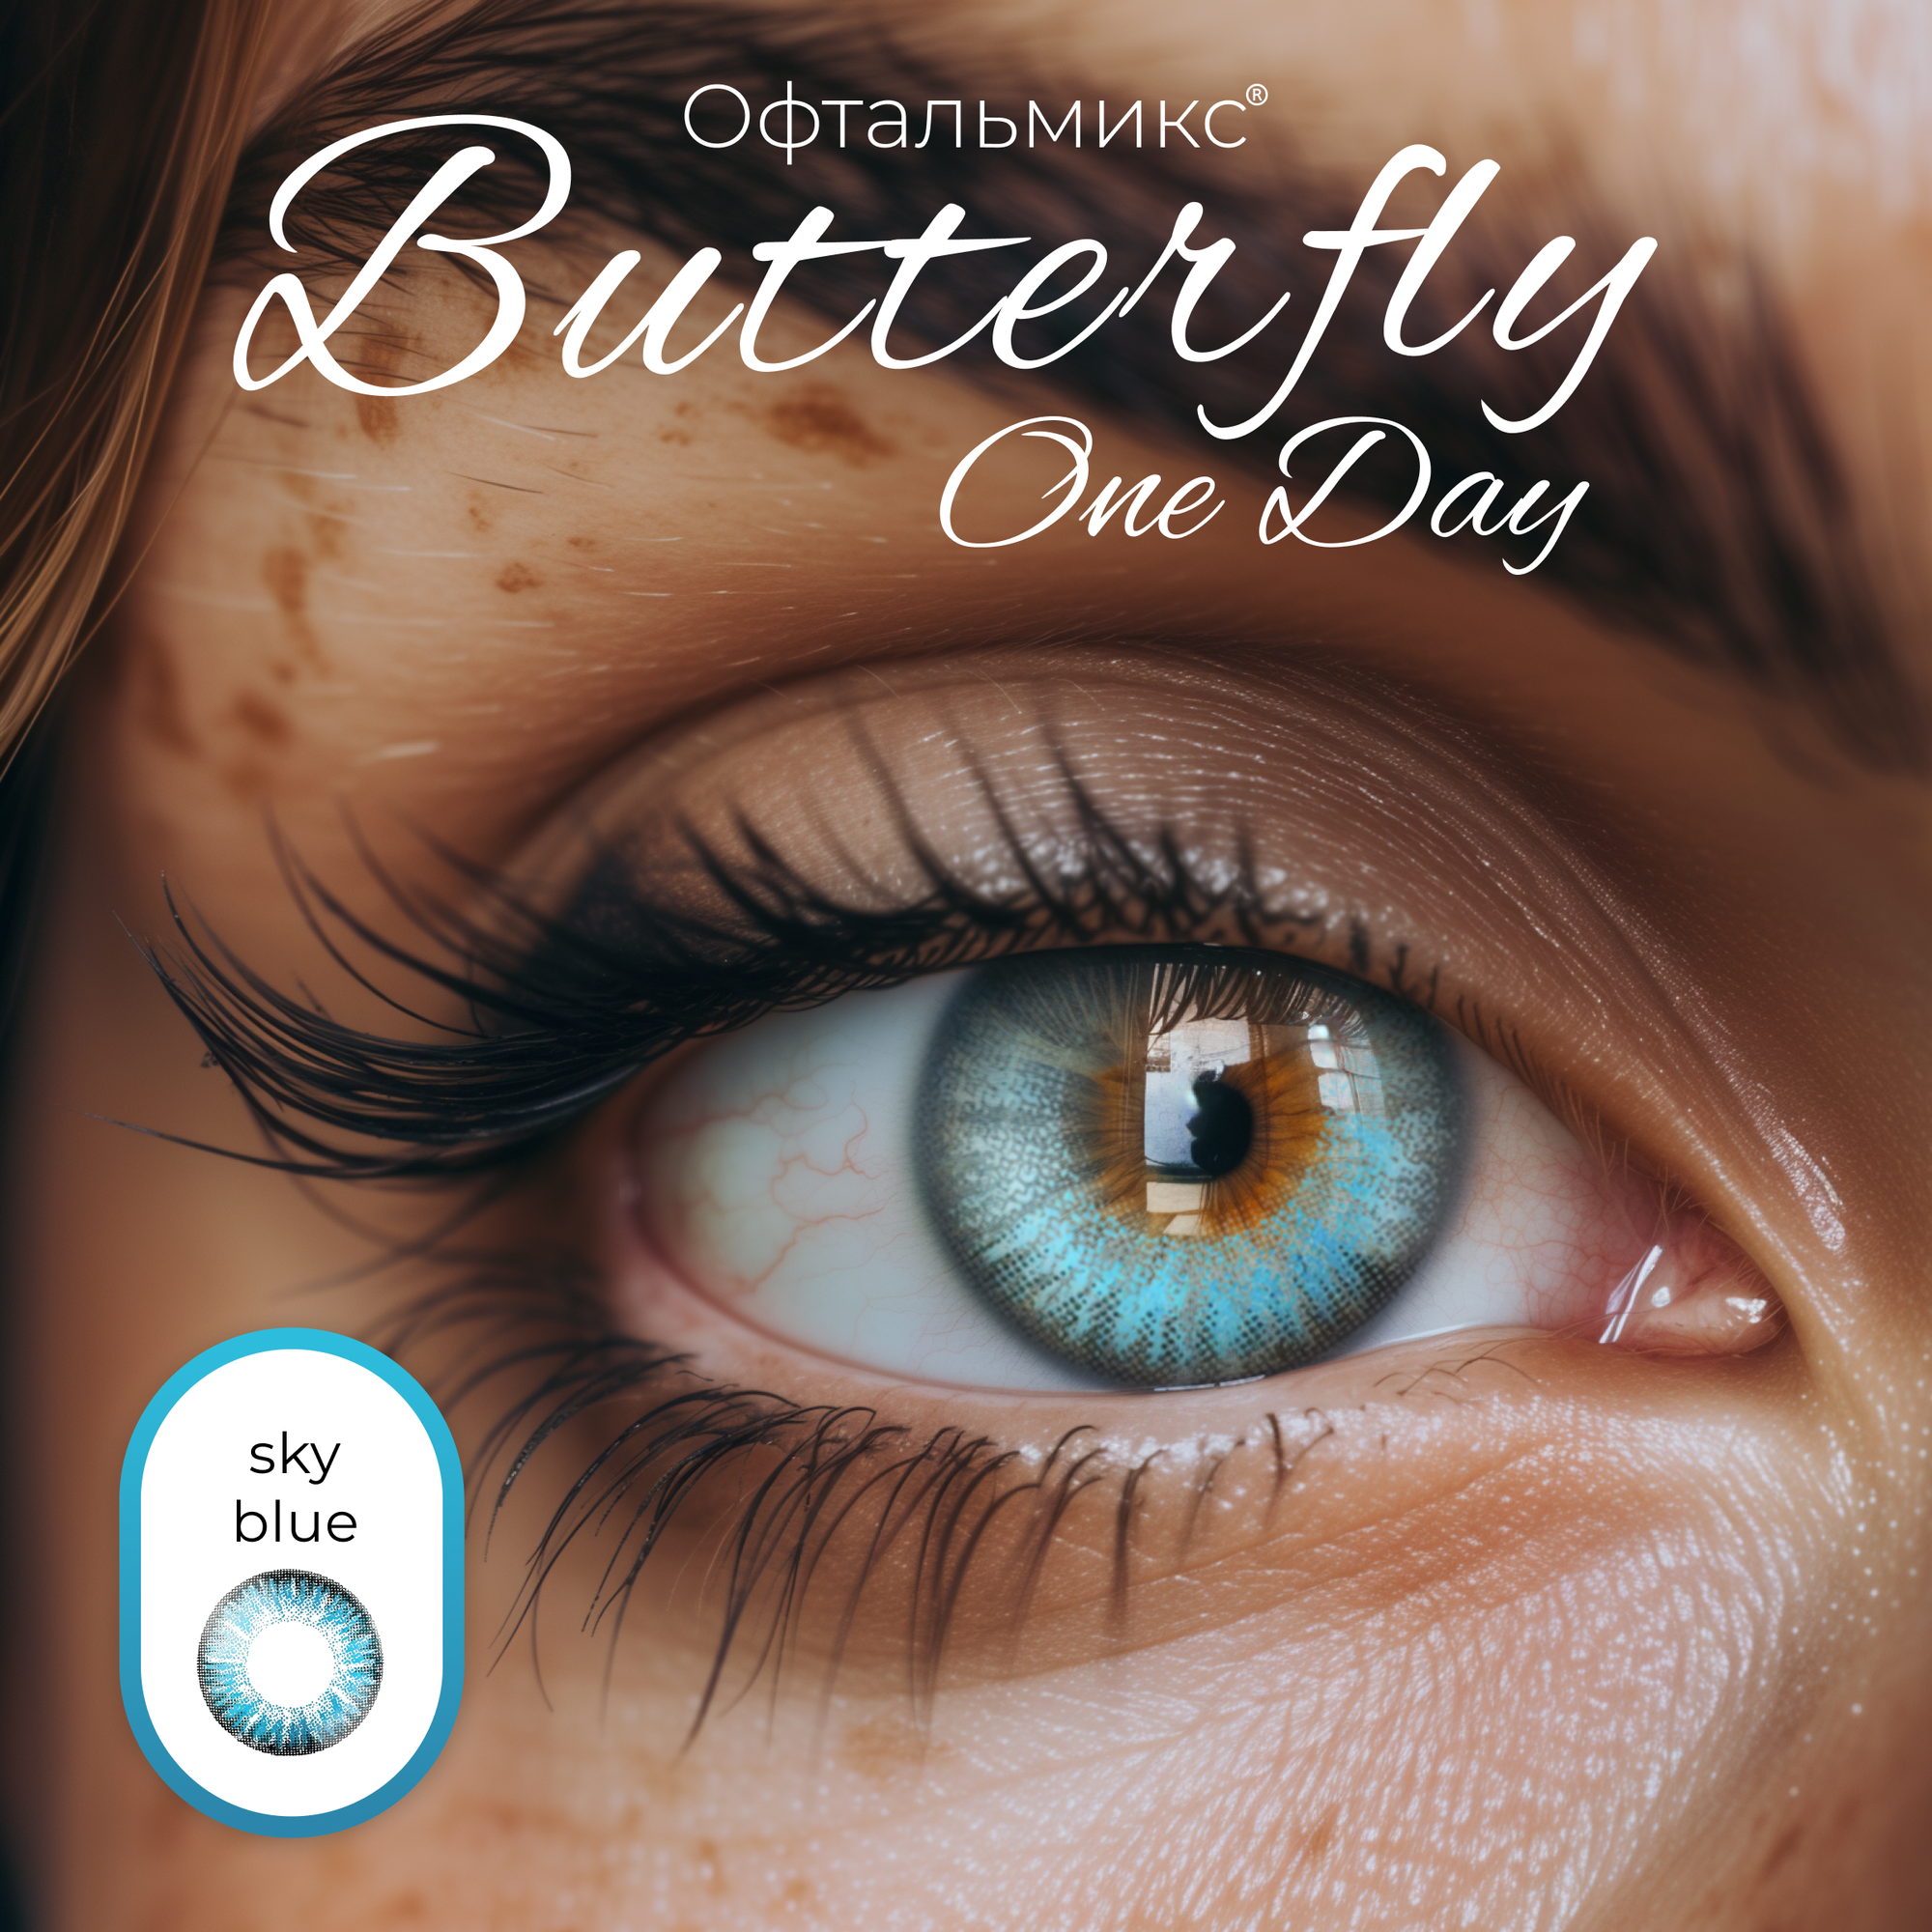 Цветные контактные линзы Офтальмикс Butterfly One Day (2 линзы) -4.50 R 8.6 Sky Blue (Голубой)